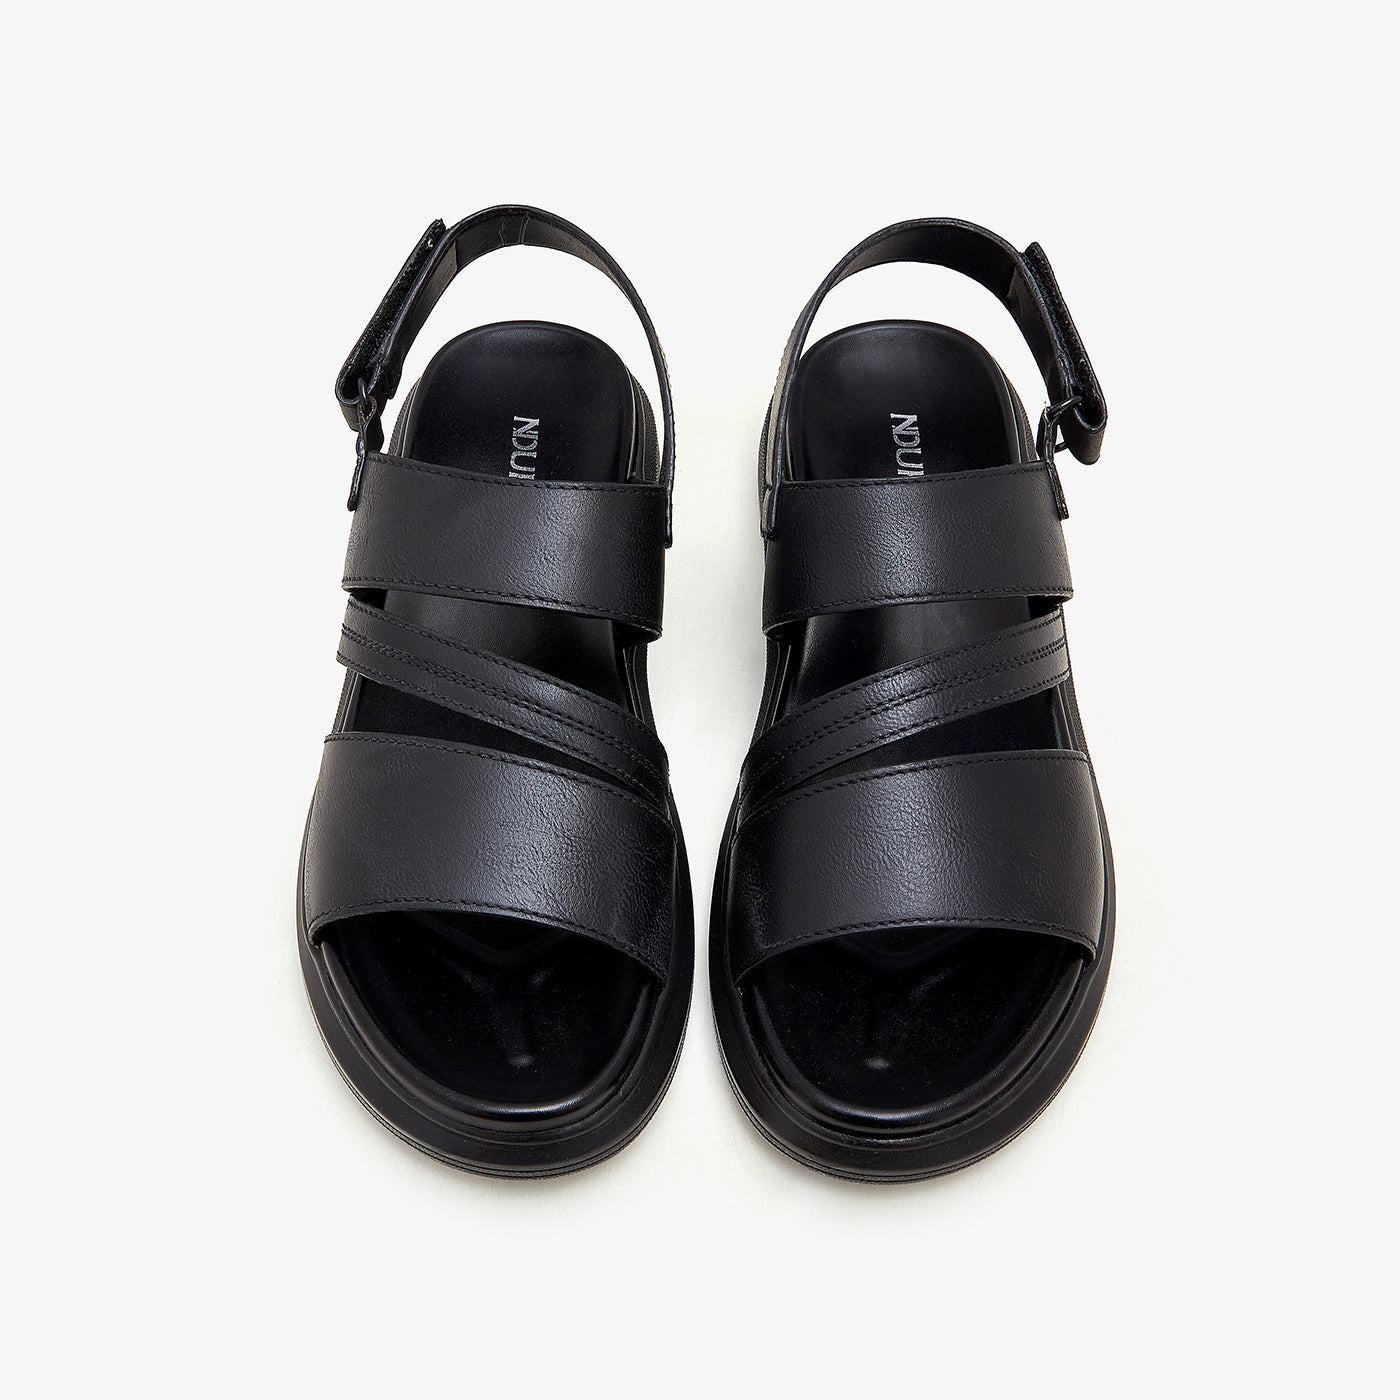 Buy Men Sandals & Peshawaris - Men's Treaded Sandals M-PL-CSB-0006 ...